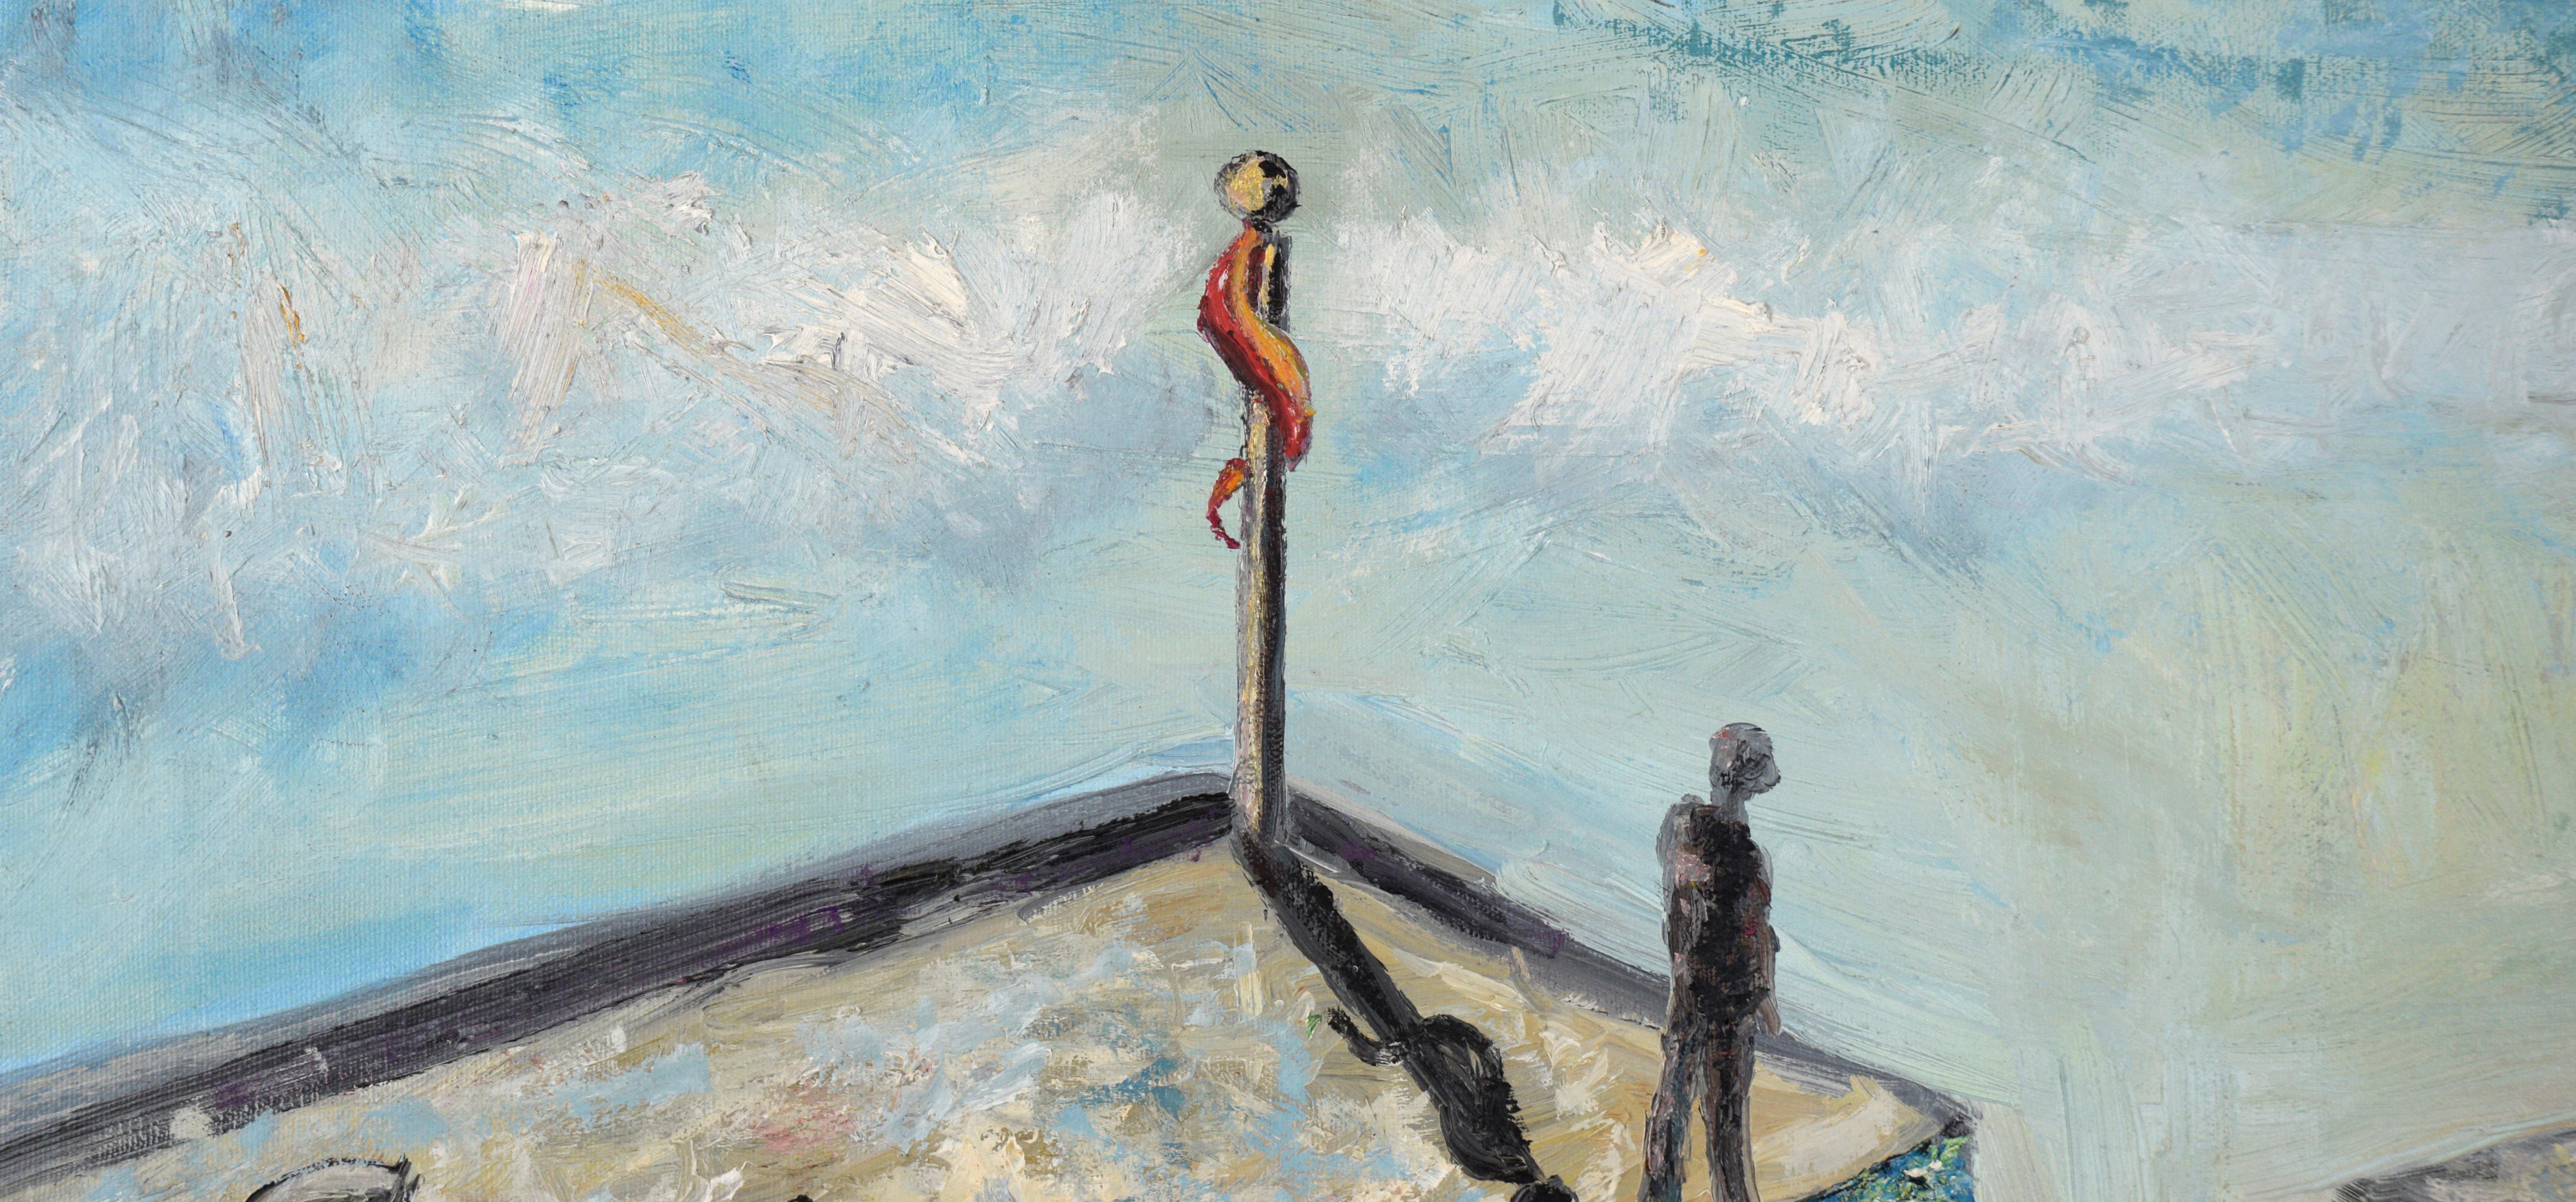 Across the Divide - Composition figurative symbolique de la baie de SF à l'huile sur toile - Painting de Unknown